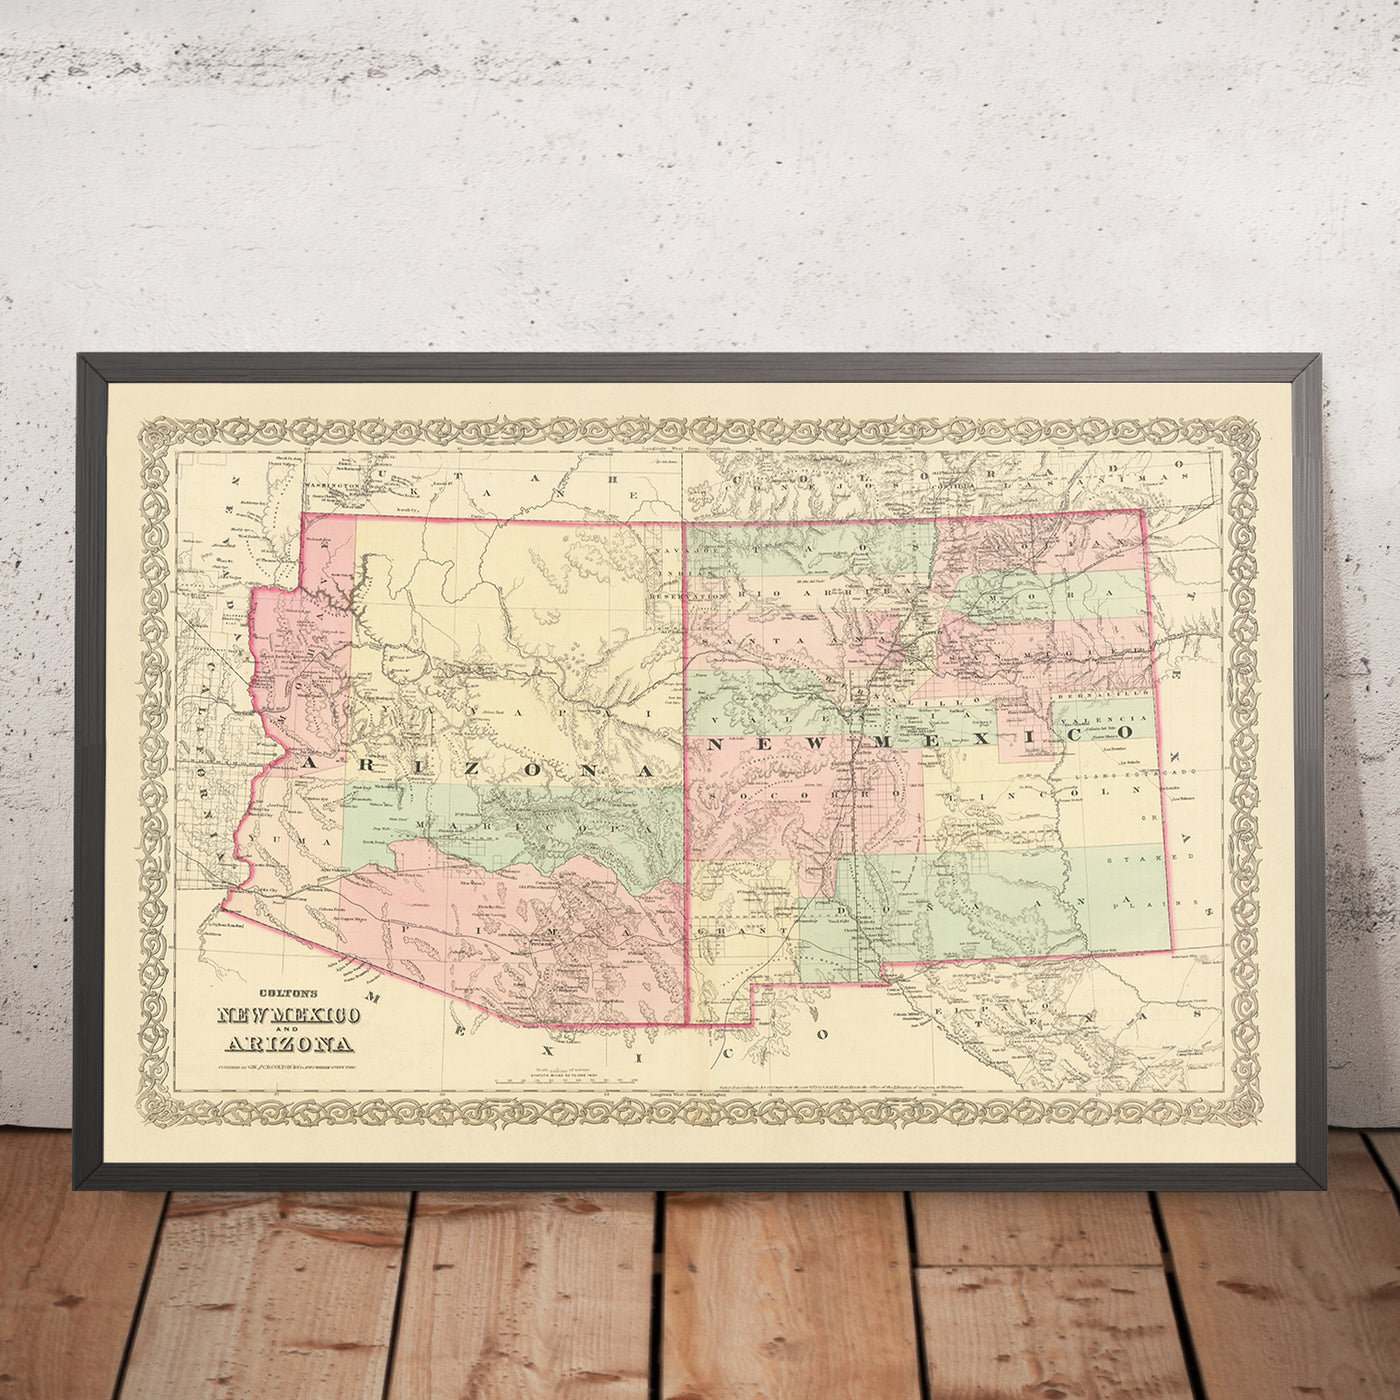 Mapa antiguo de Nuevo México y Arizona por Colton, 1873: Santa Fe, Tucson, Albuquerque, Prescott y Mesilla